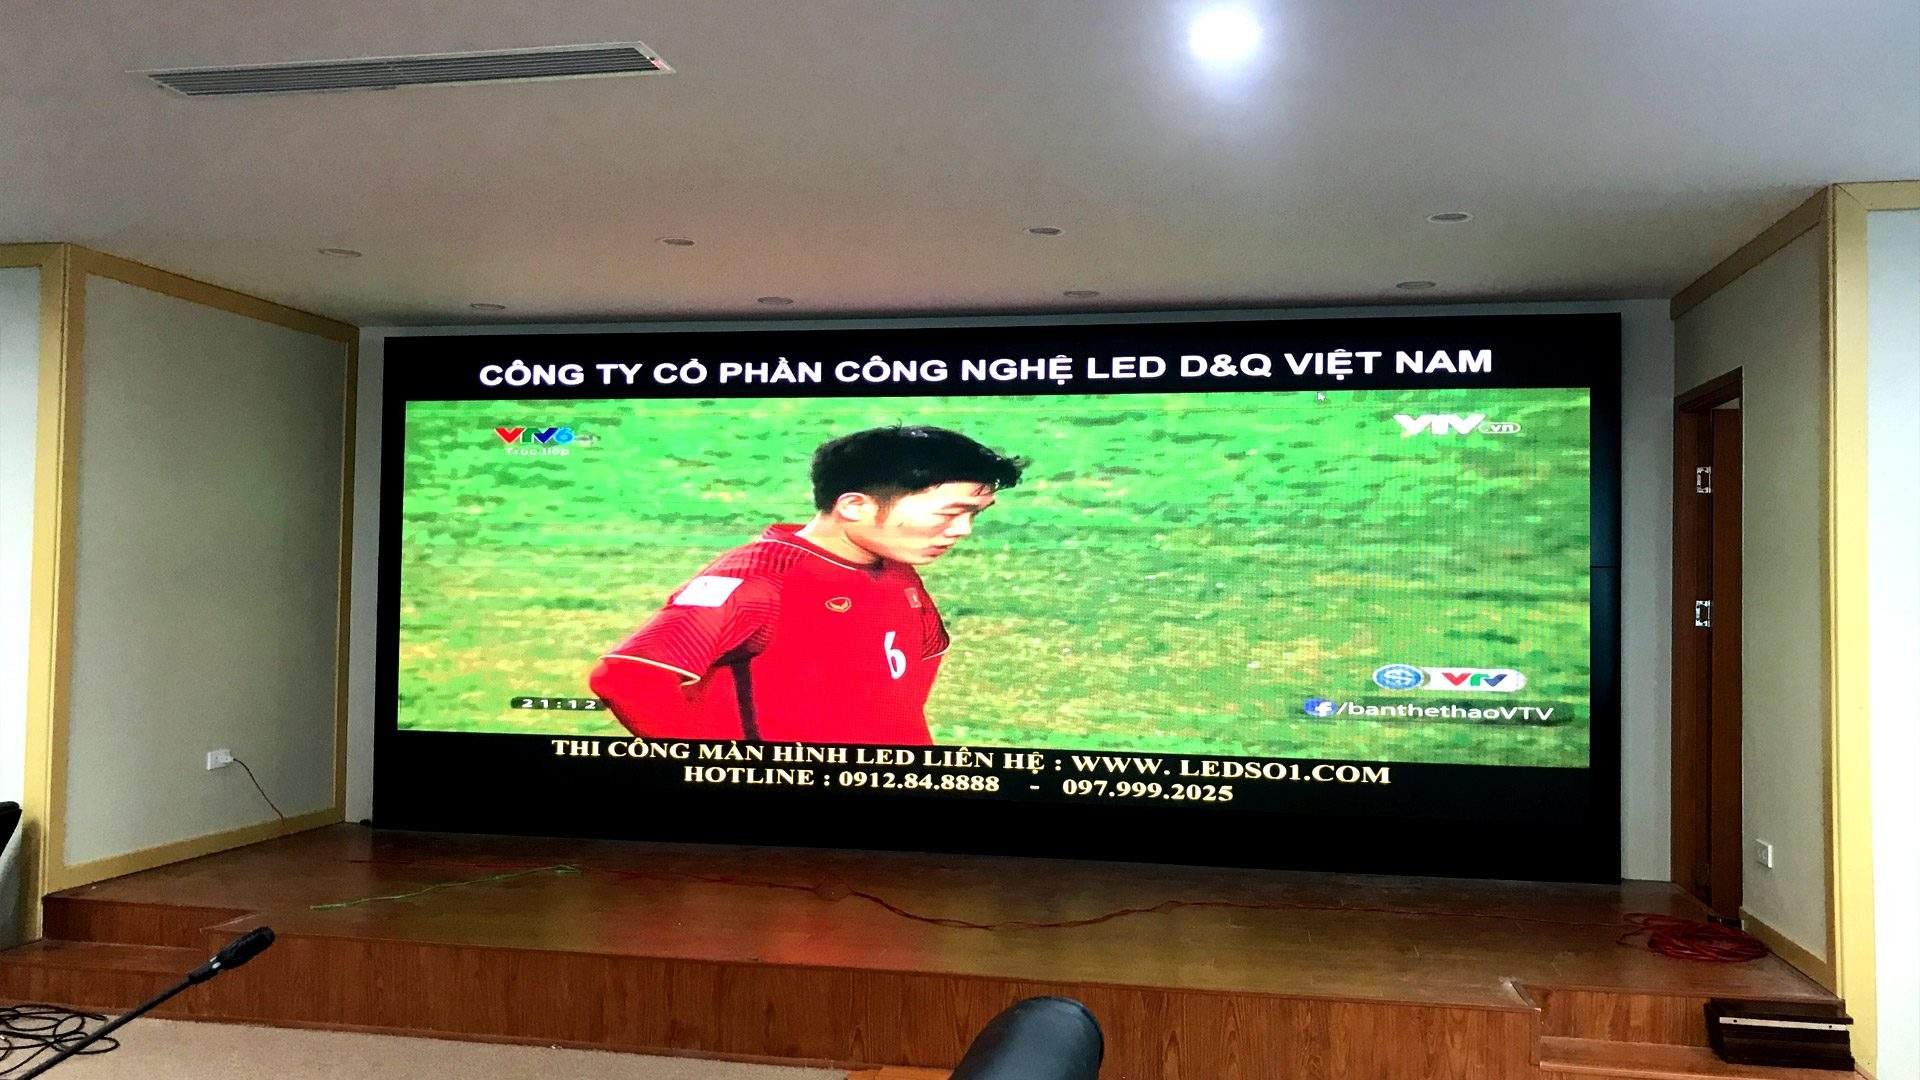 Thi công màn hình led p3 sân bay Đà Nẵng  